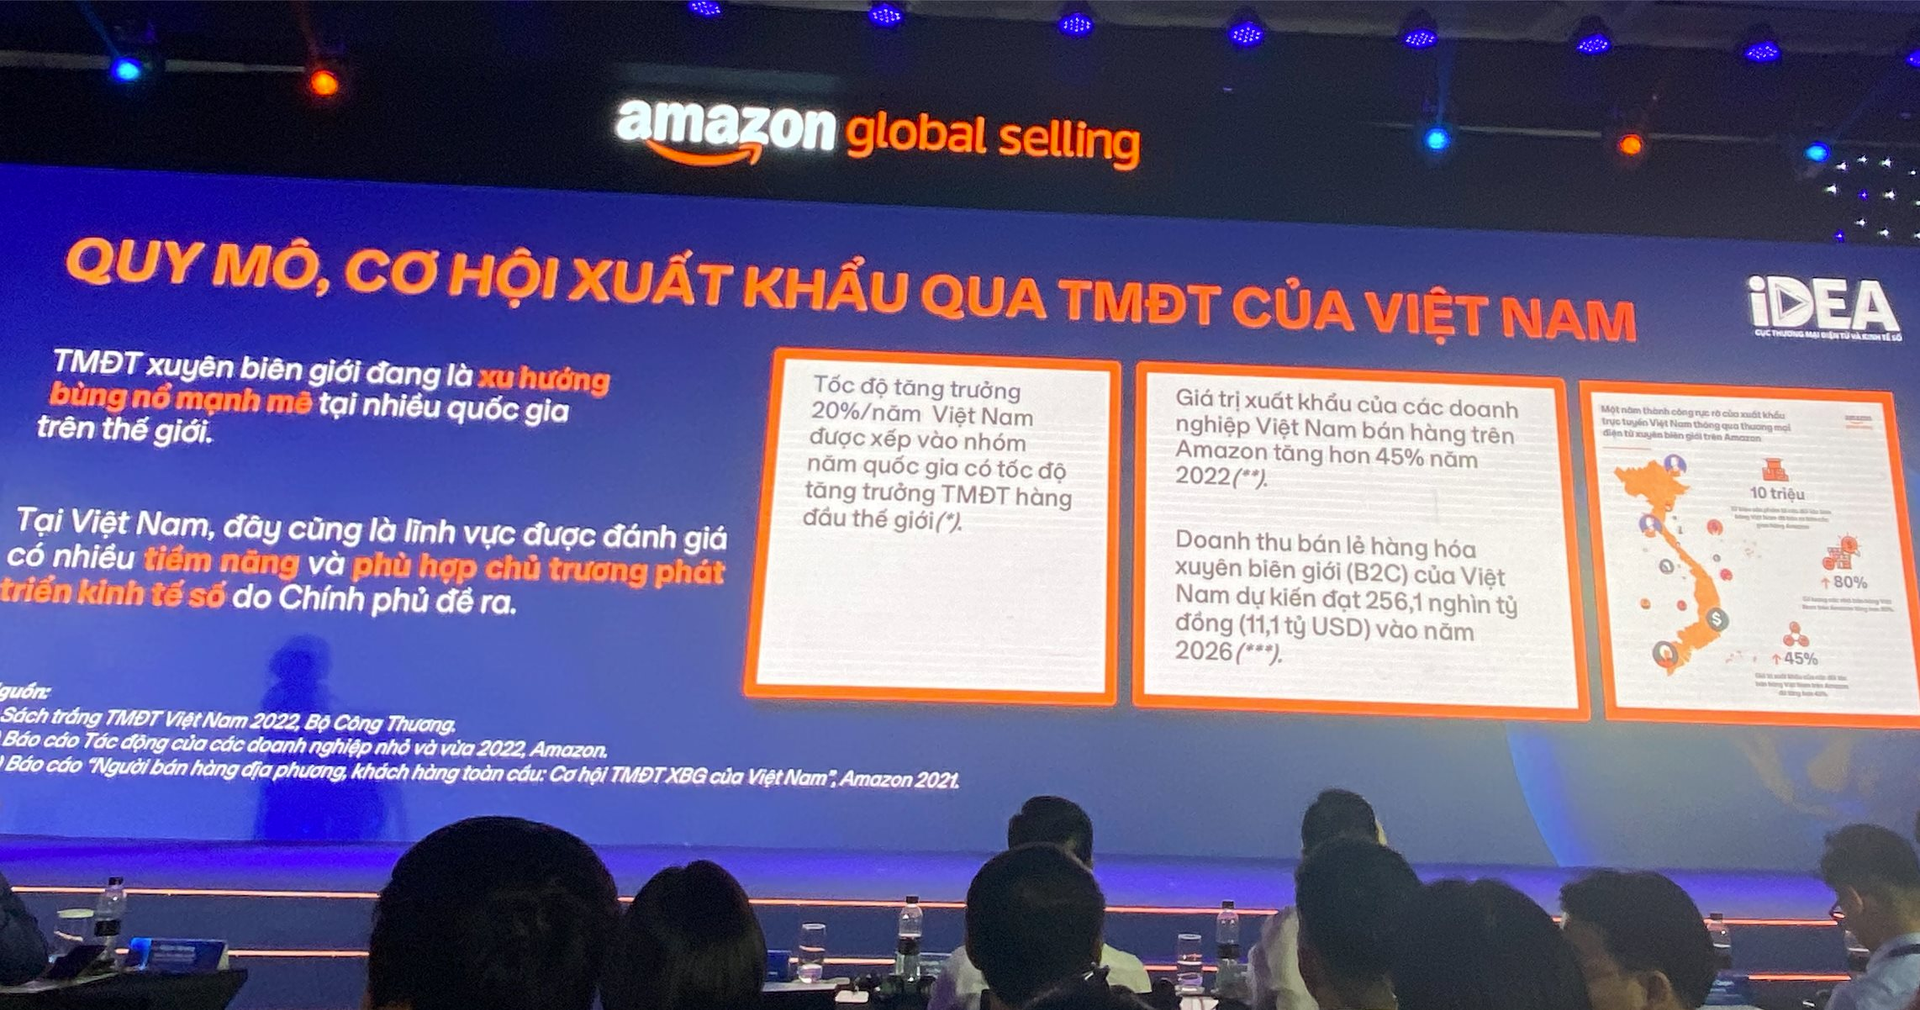 Người Việt đổ xô bán hàng online xuyên biên giới: Doanh thu dự tính chạm mốc 300.000 tỷ đồng vào 2027, số nhà bán hàng trên Amazon tăng 80% - Ảnh 2.